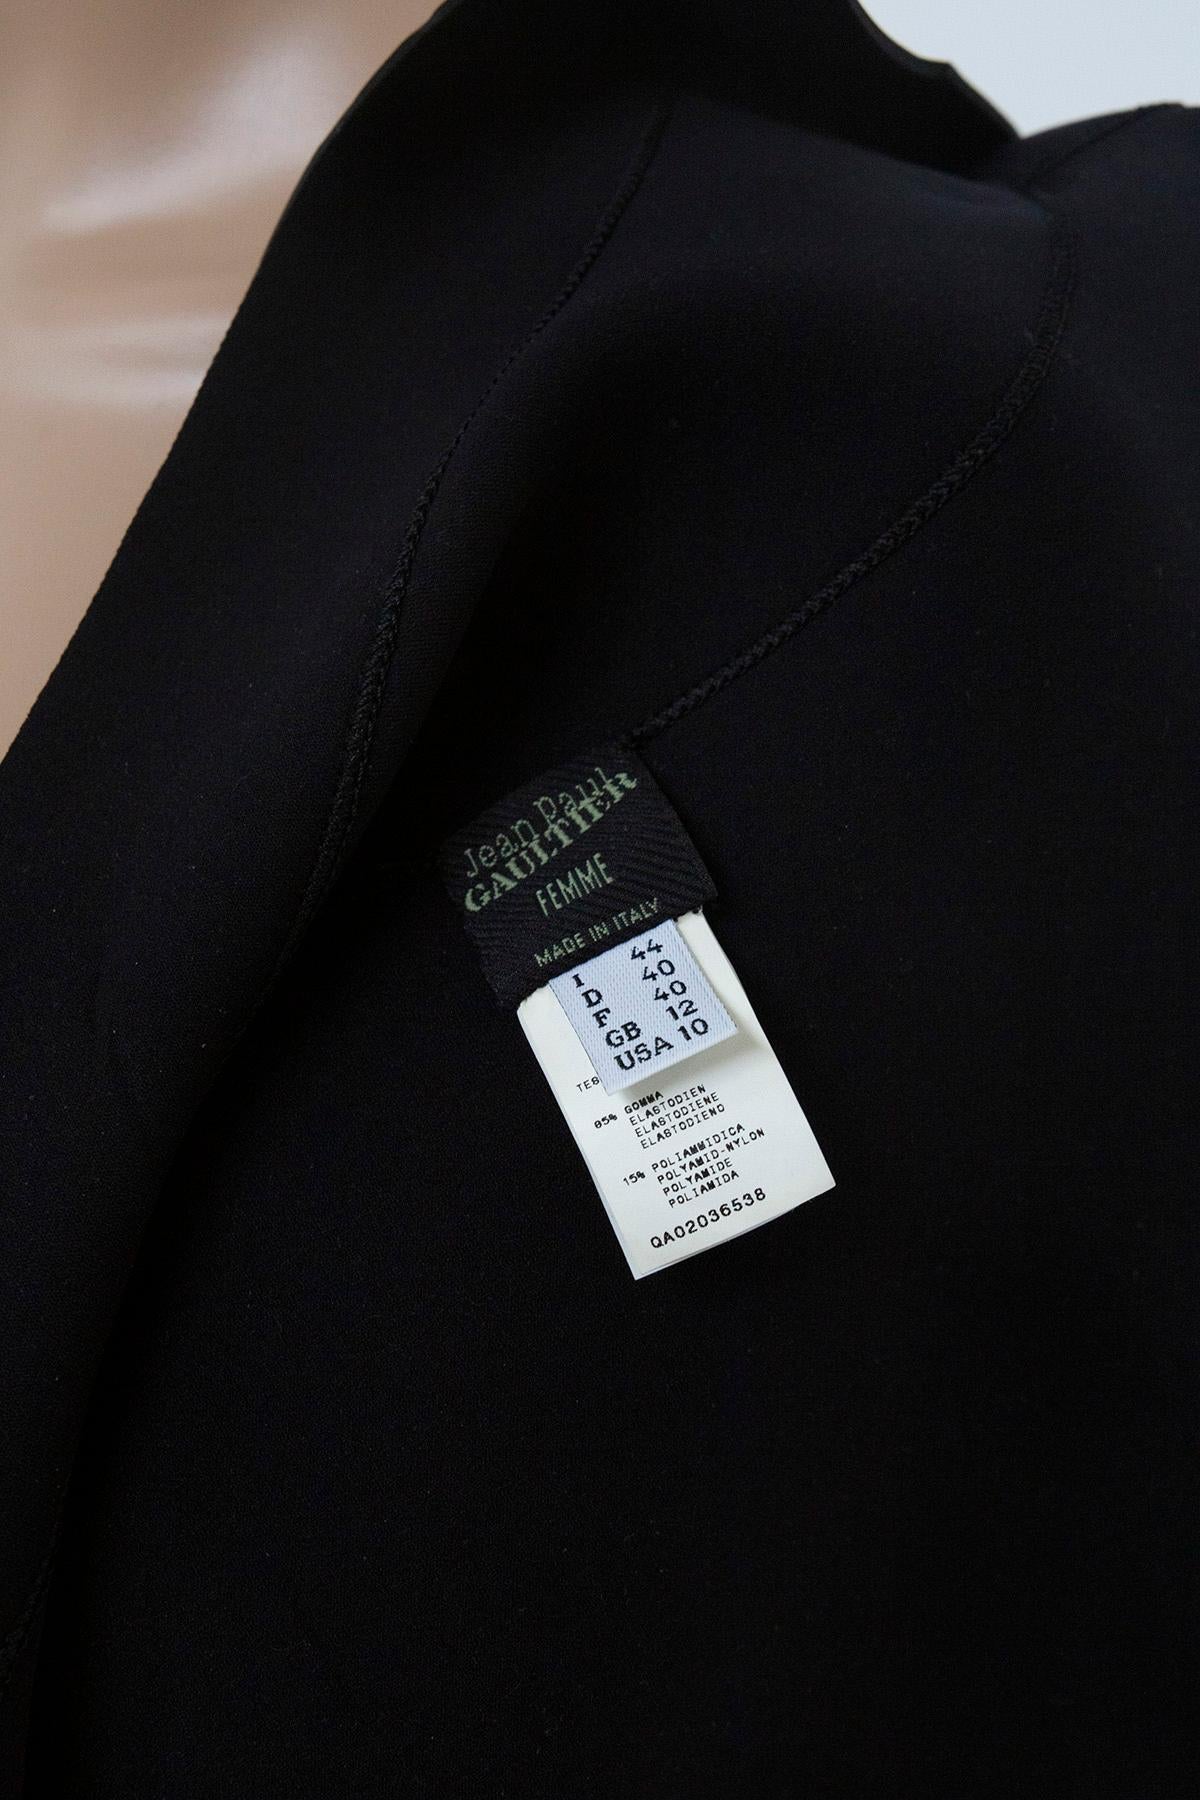 Jean Paul Gaultier modern suba/rubberized jacket In Good Condition For Sale In Milano, IT